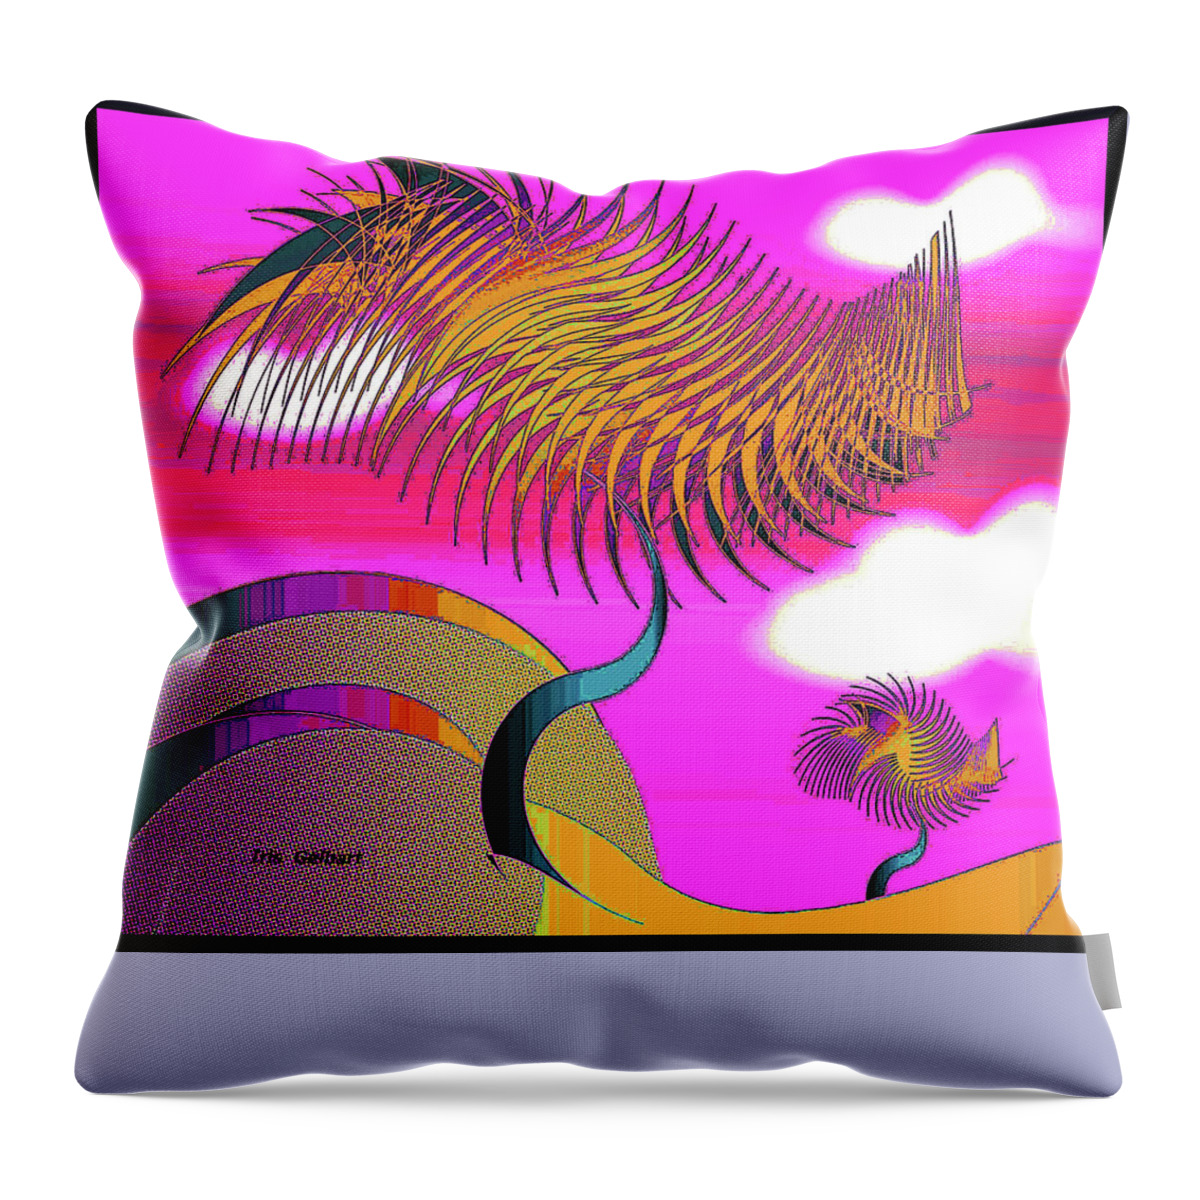 Abstract Art Throw Pillow featuring the digital art Somewhere #3 by Iris Gelbart